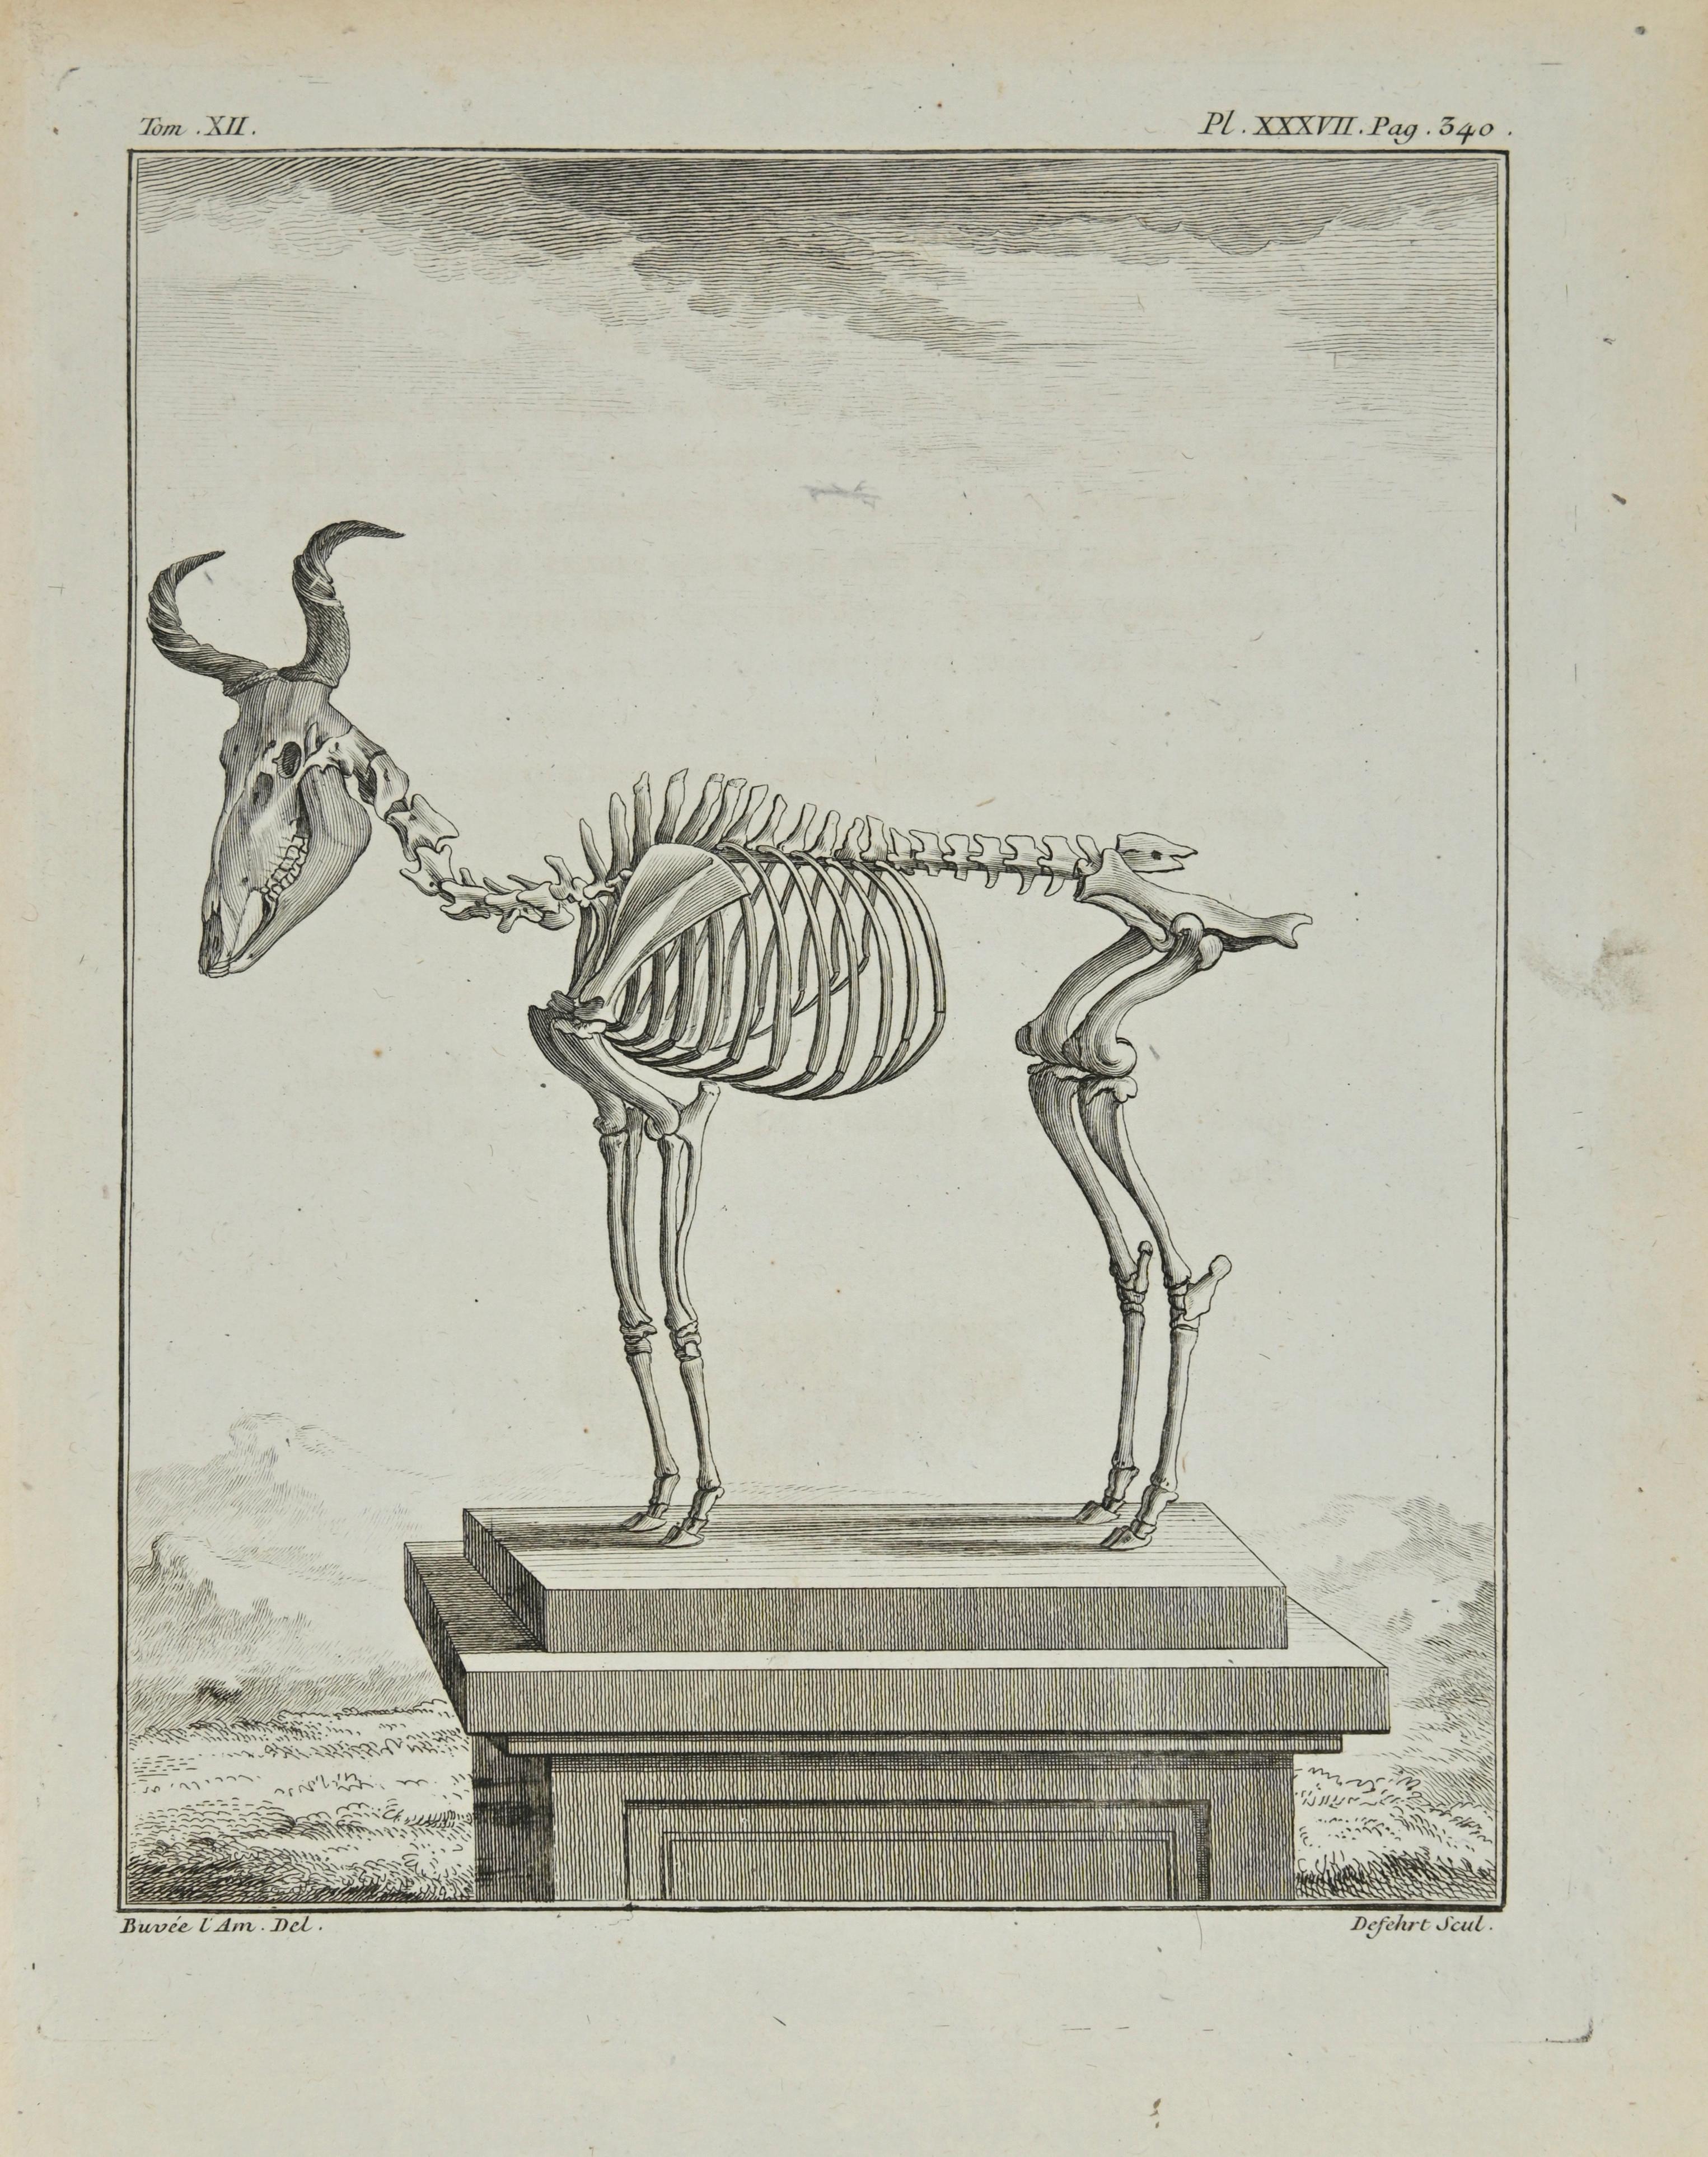 Das Skelett ist eine Radierung von Antoine Defehrt aus dem Jahr 1771.

Es gehört zu der Reihe "Histoire naturelle, générale et particulière avec la description du Cabinet du Roi".

Signatur des Künstlers rechts unten eingraviert.

Gute Bedingungen